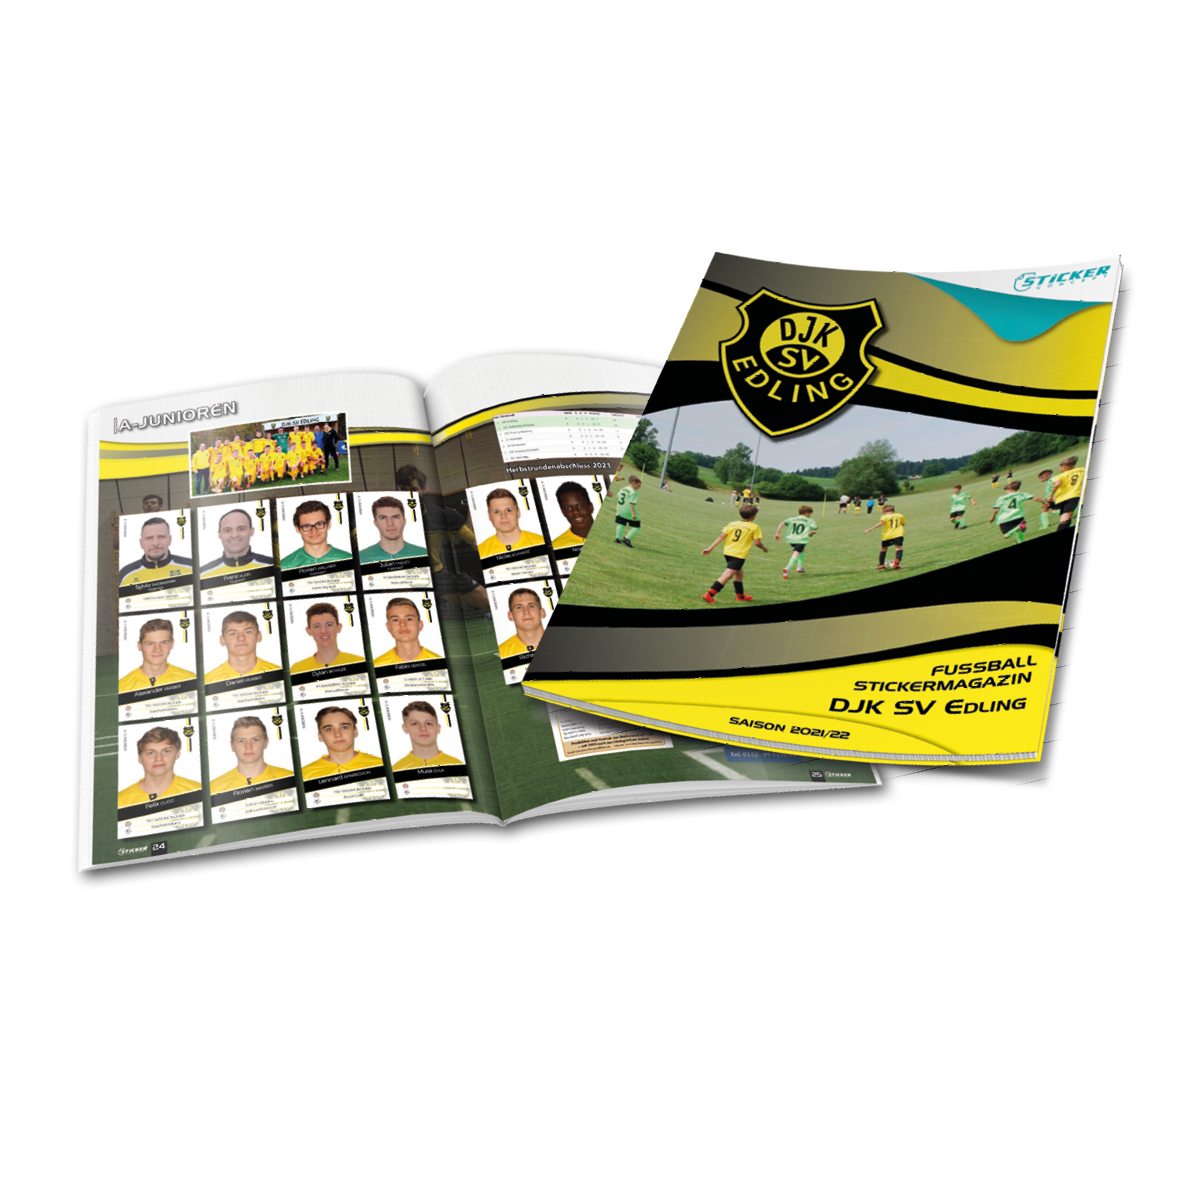 Stickeralben für Fußball Verein von DJK SV Edling Sticker-Concept.